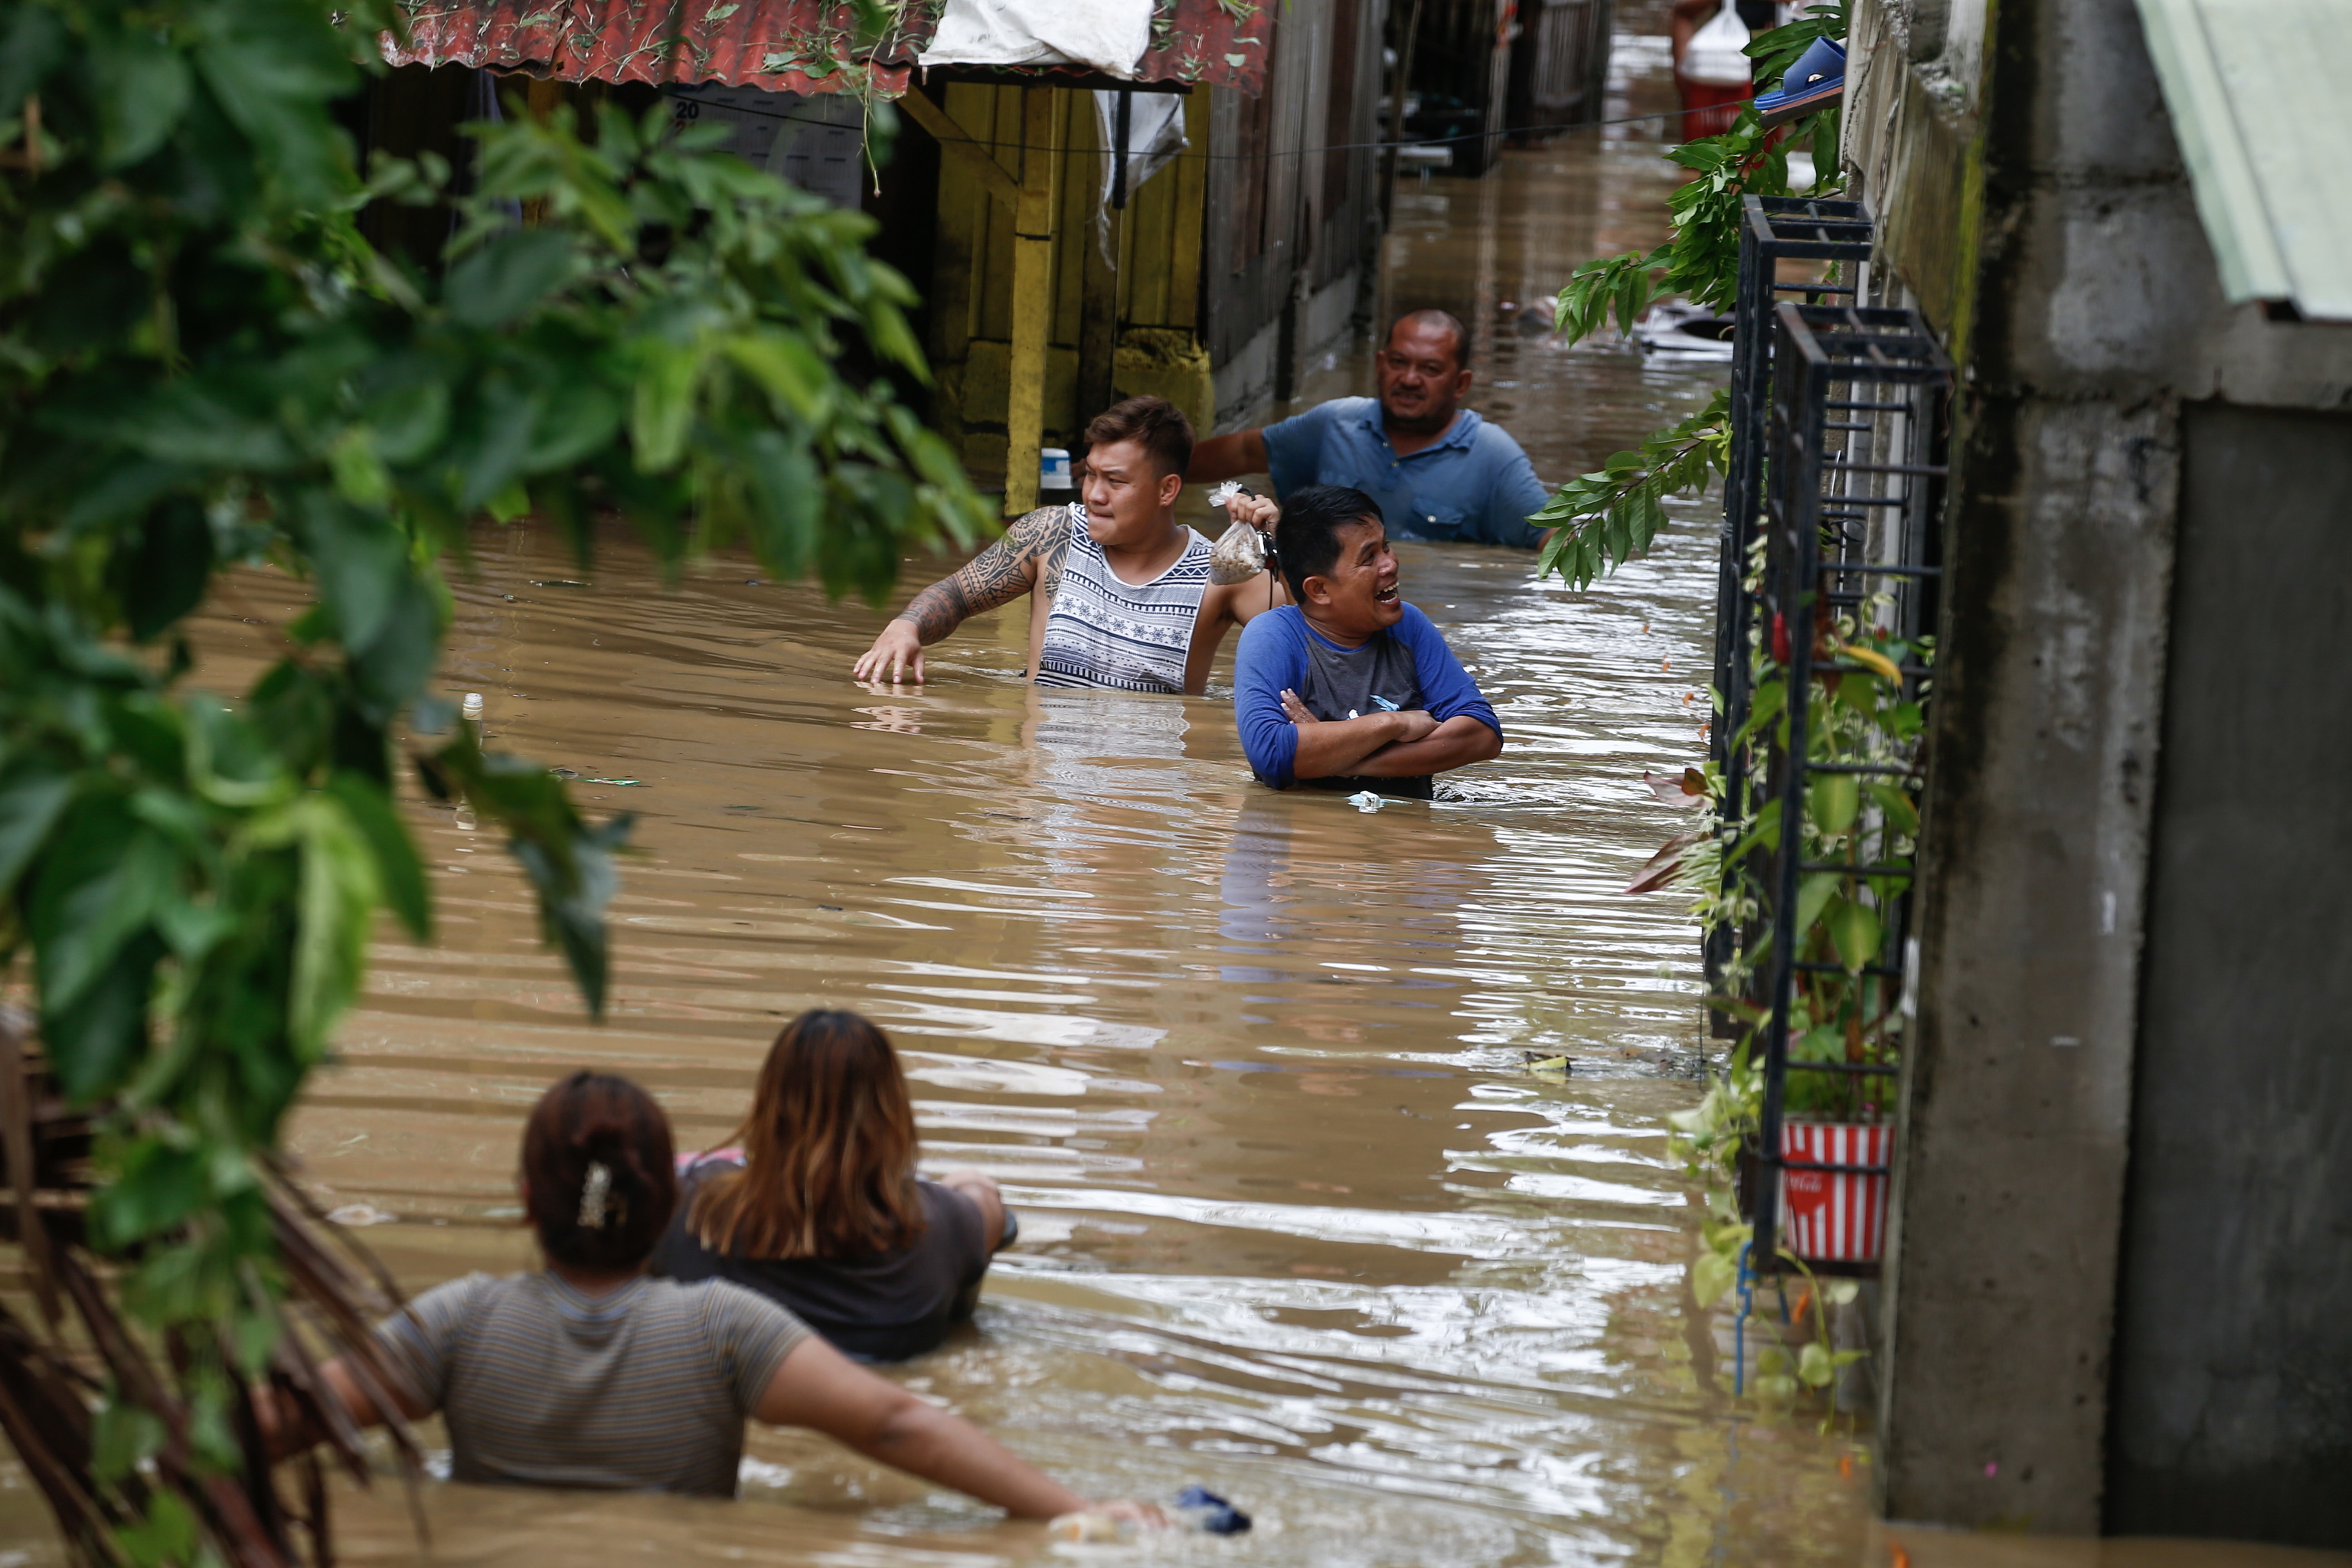 Residentes vadean el agua de las inundaciones causadas por el tifón Noru en la ciudad de San Miguel de la provincia de Bulacan, al norte de Manila, Filipinas 26 de septiembre de 2022. El tifón Noru atravesó la región septentrional filipina de Luzón el 25 de septiembre y provocó la evacuación de miles de personas debido a las intensas lluvias y los fuertes vientos. Se espera que el tifón Noru abandone la zona de responsabilidad de Filipinas en la noche del 26 de septiembre.